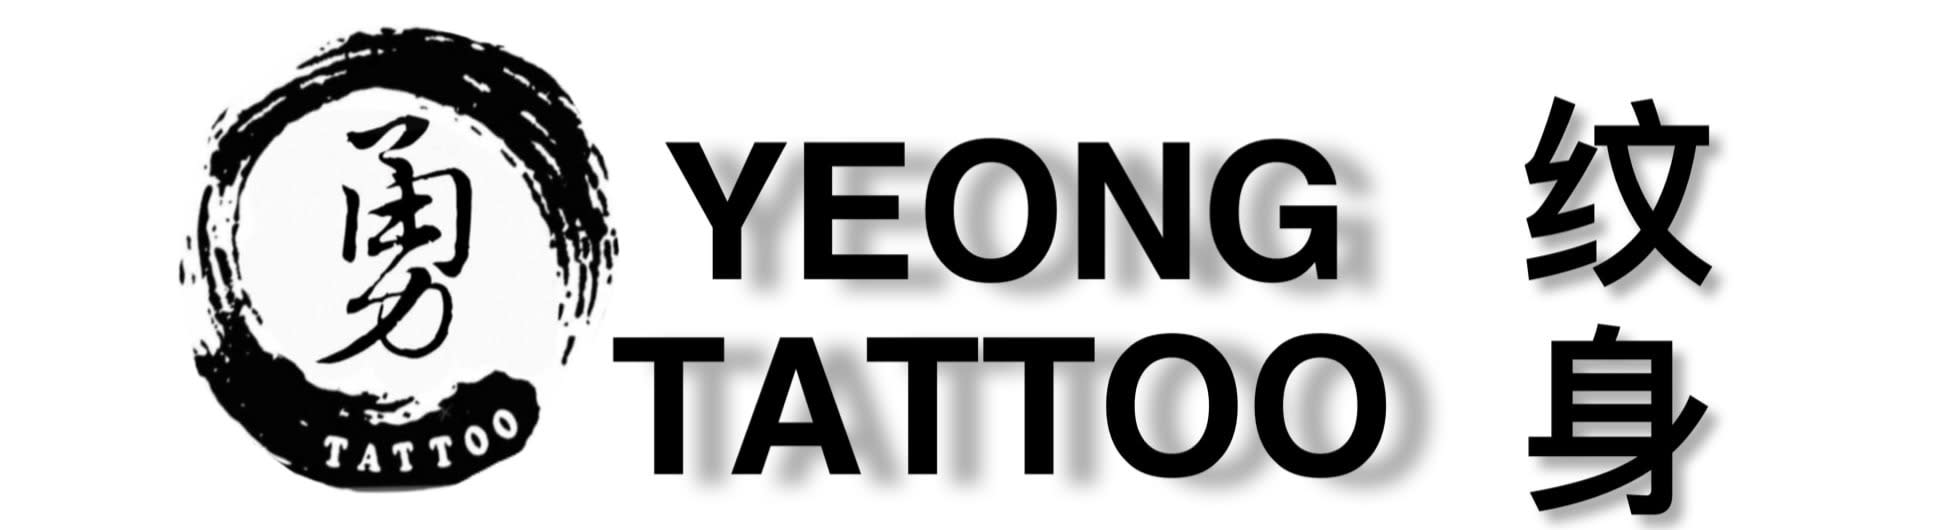 Yeong Tattoo